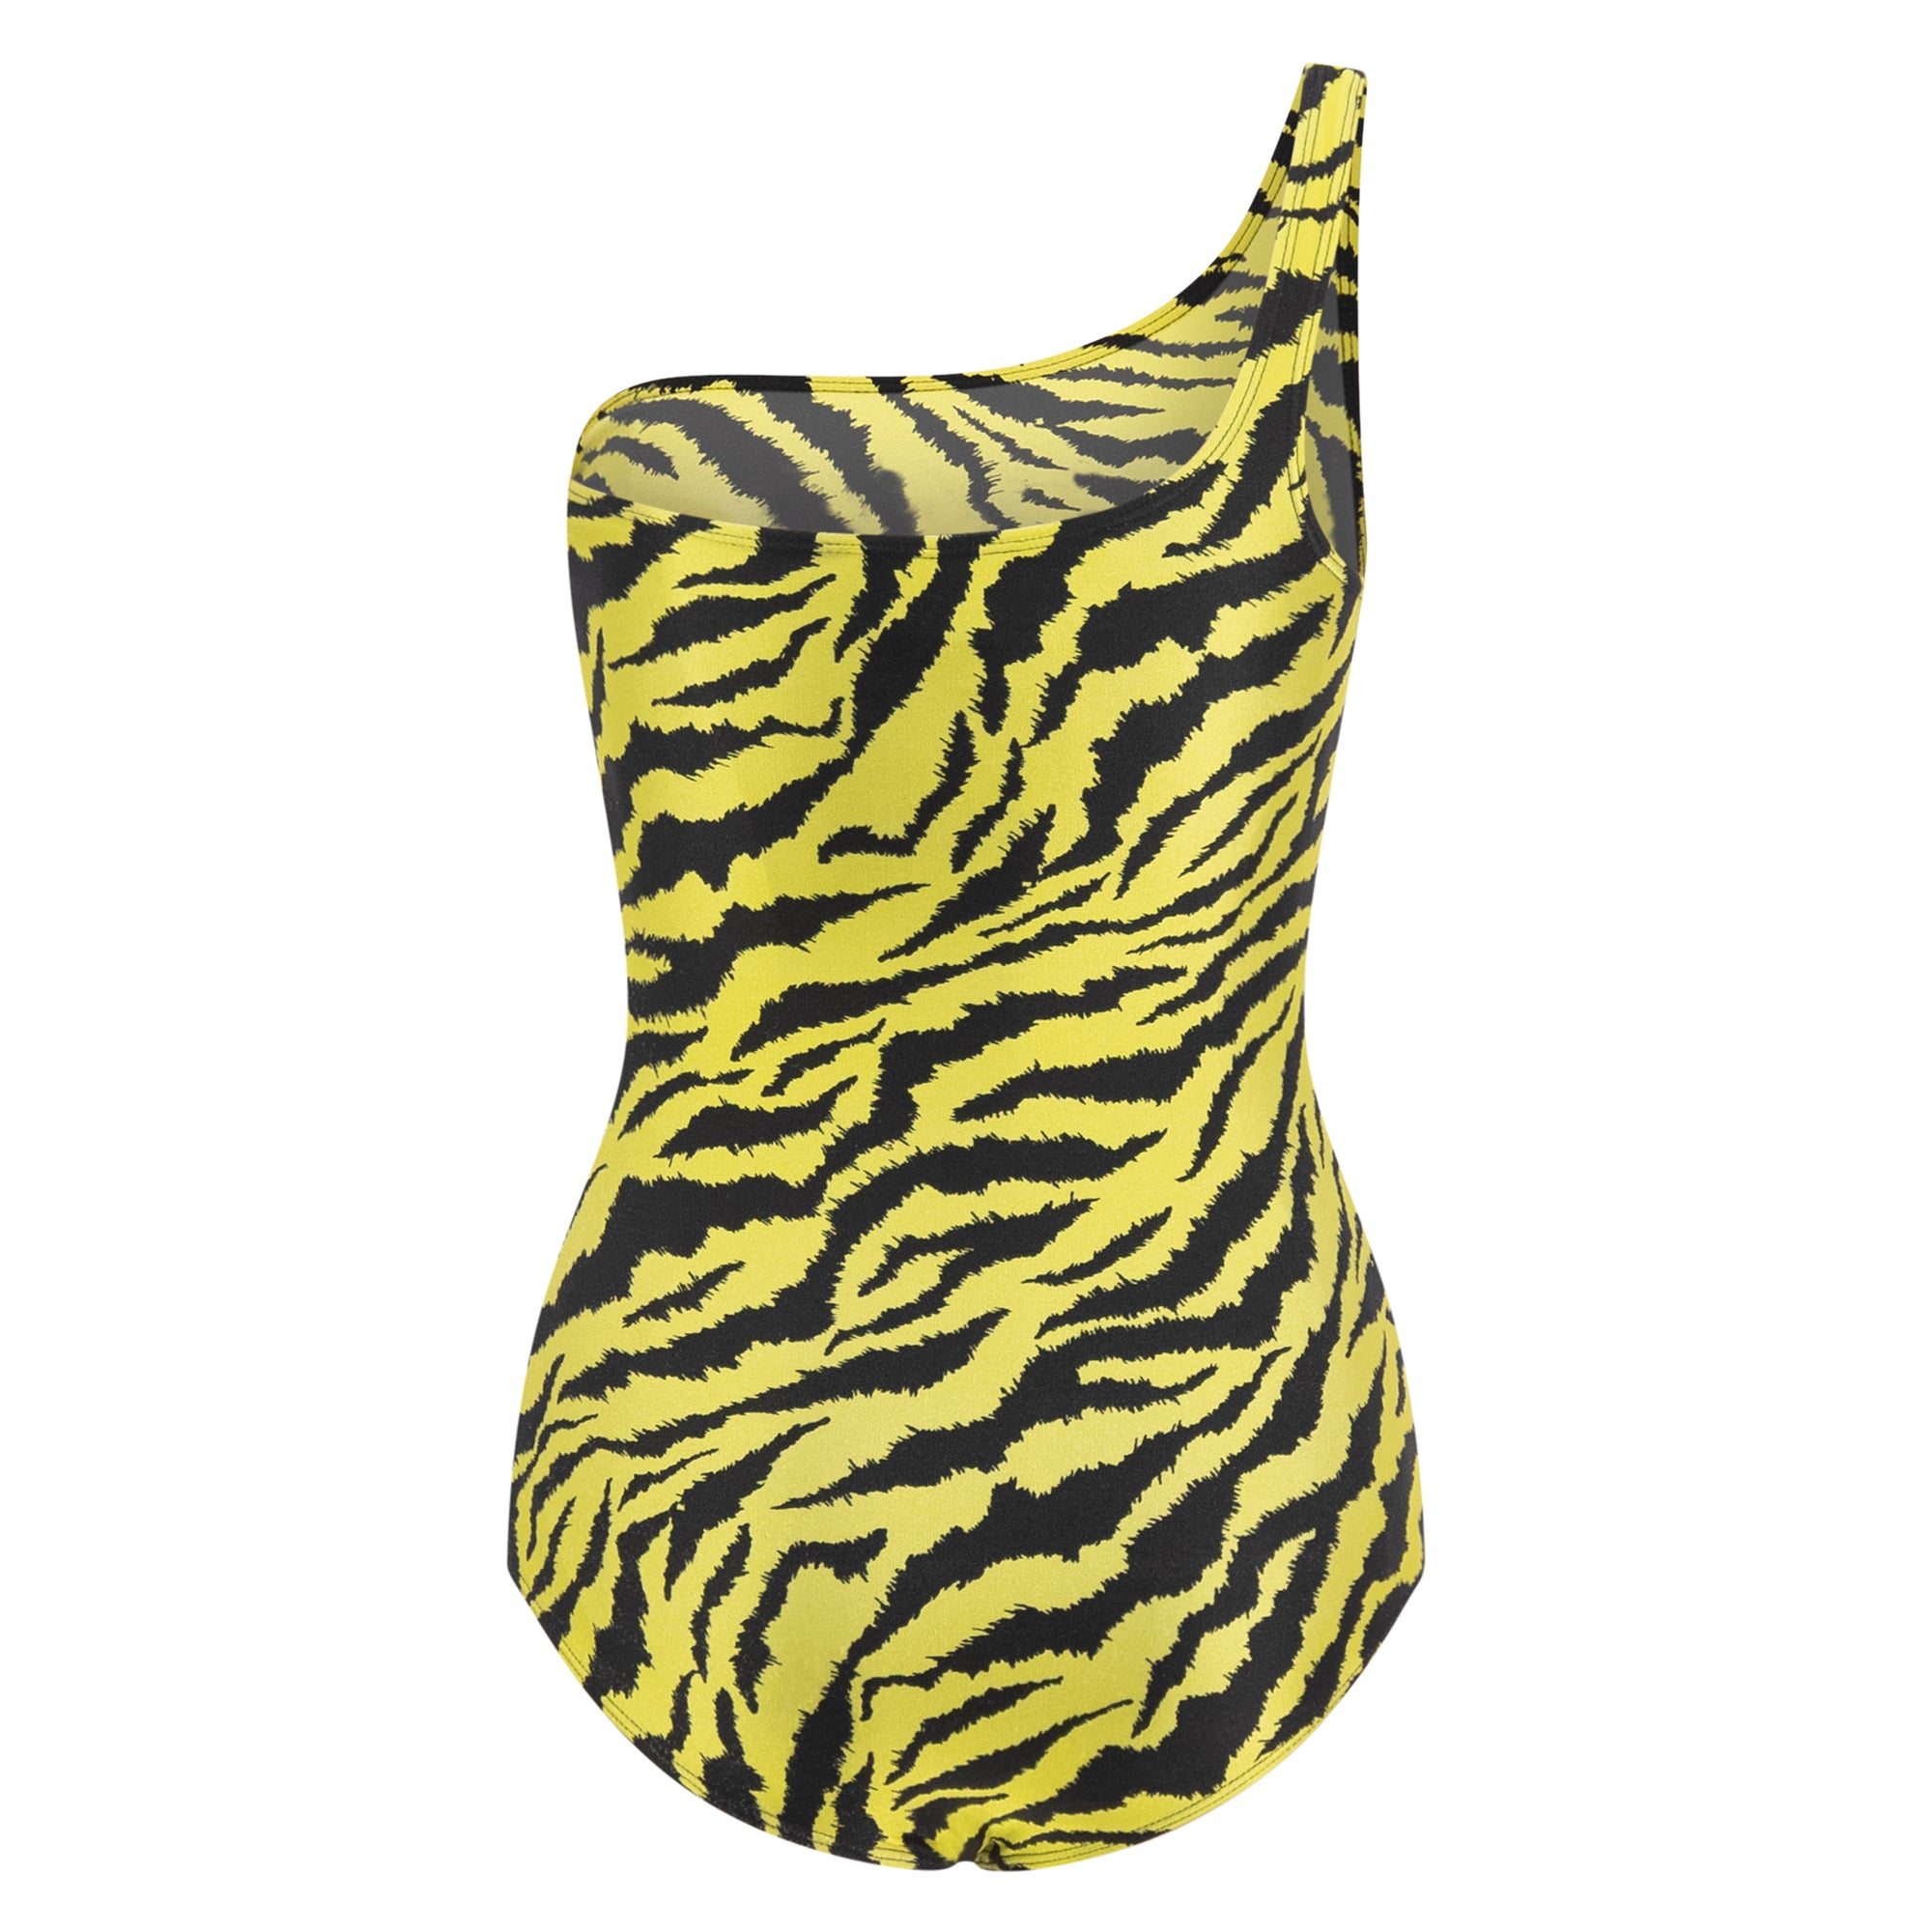 Gucci Zebra Print Swimsuit One-piece Bathing Suit